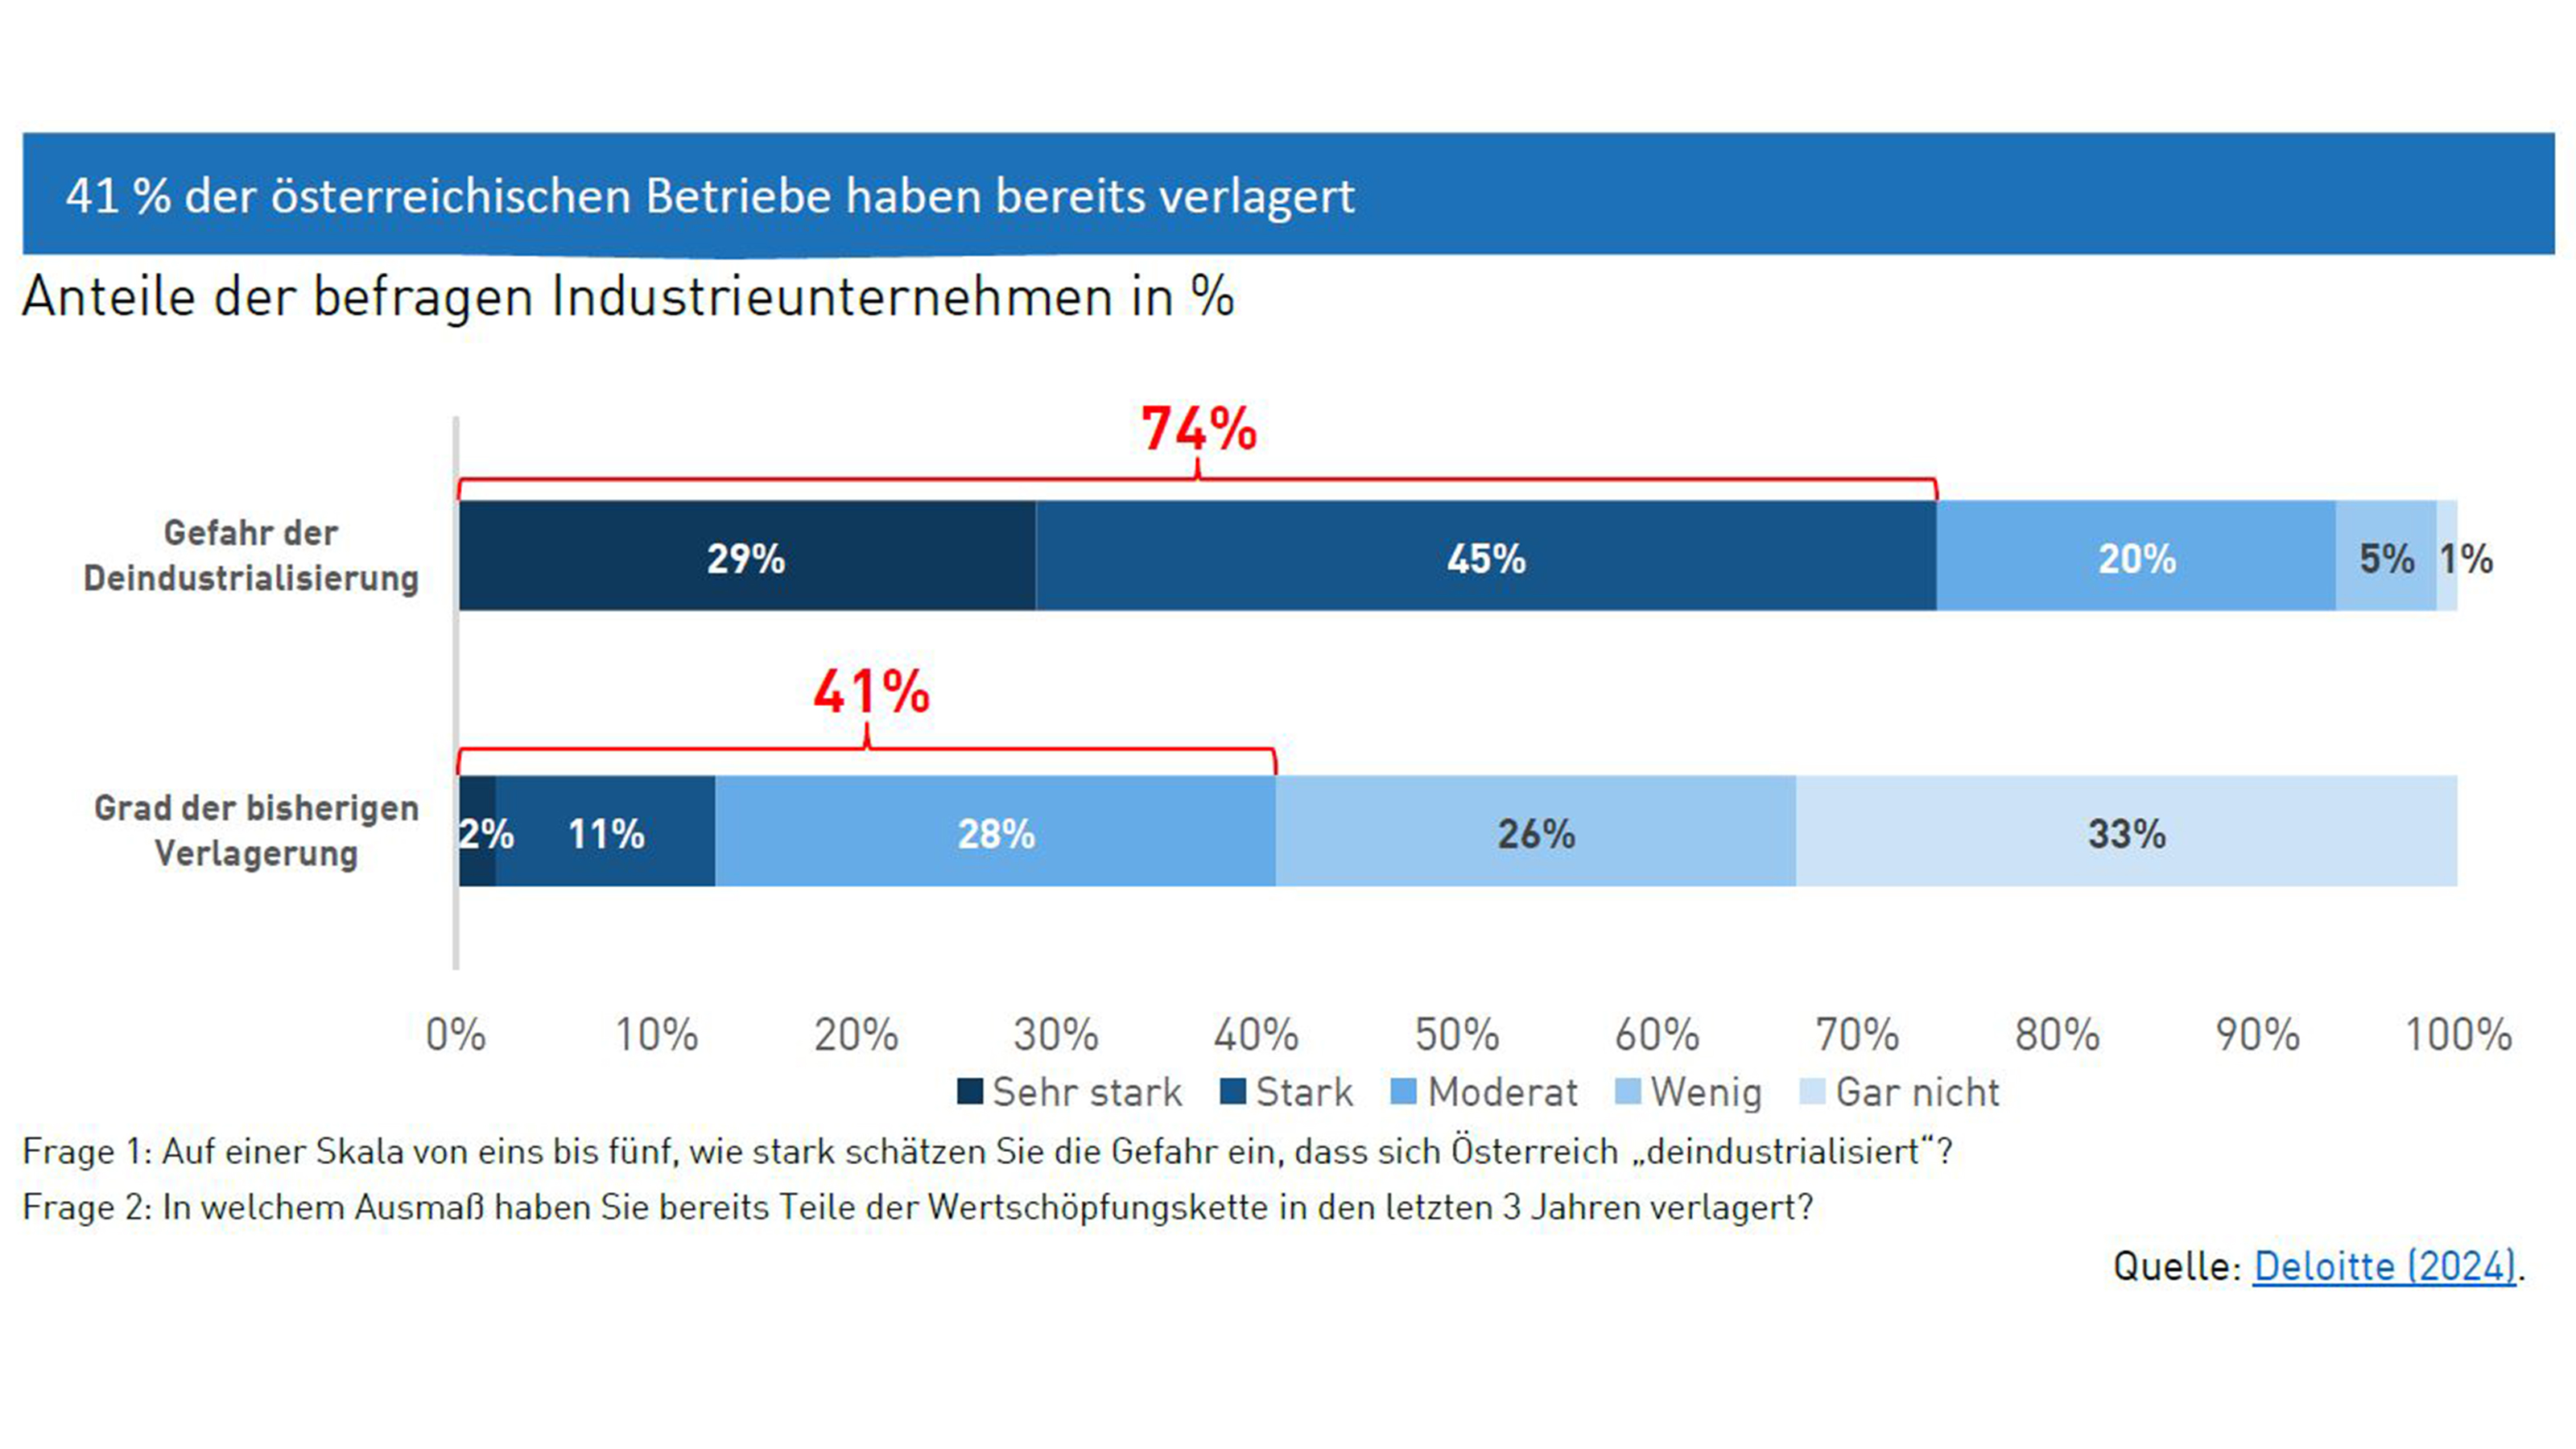 Balkendiagramm zur Verlagerung der österreichischen Betriebe bei 41 %, Einschätzungen zur Gefahr der Deindustrialisierung und Grad der bisherigen Verlagerung